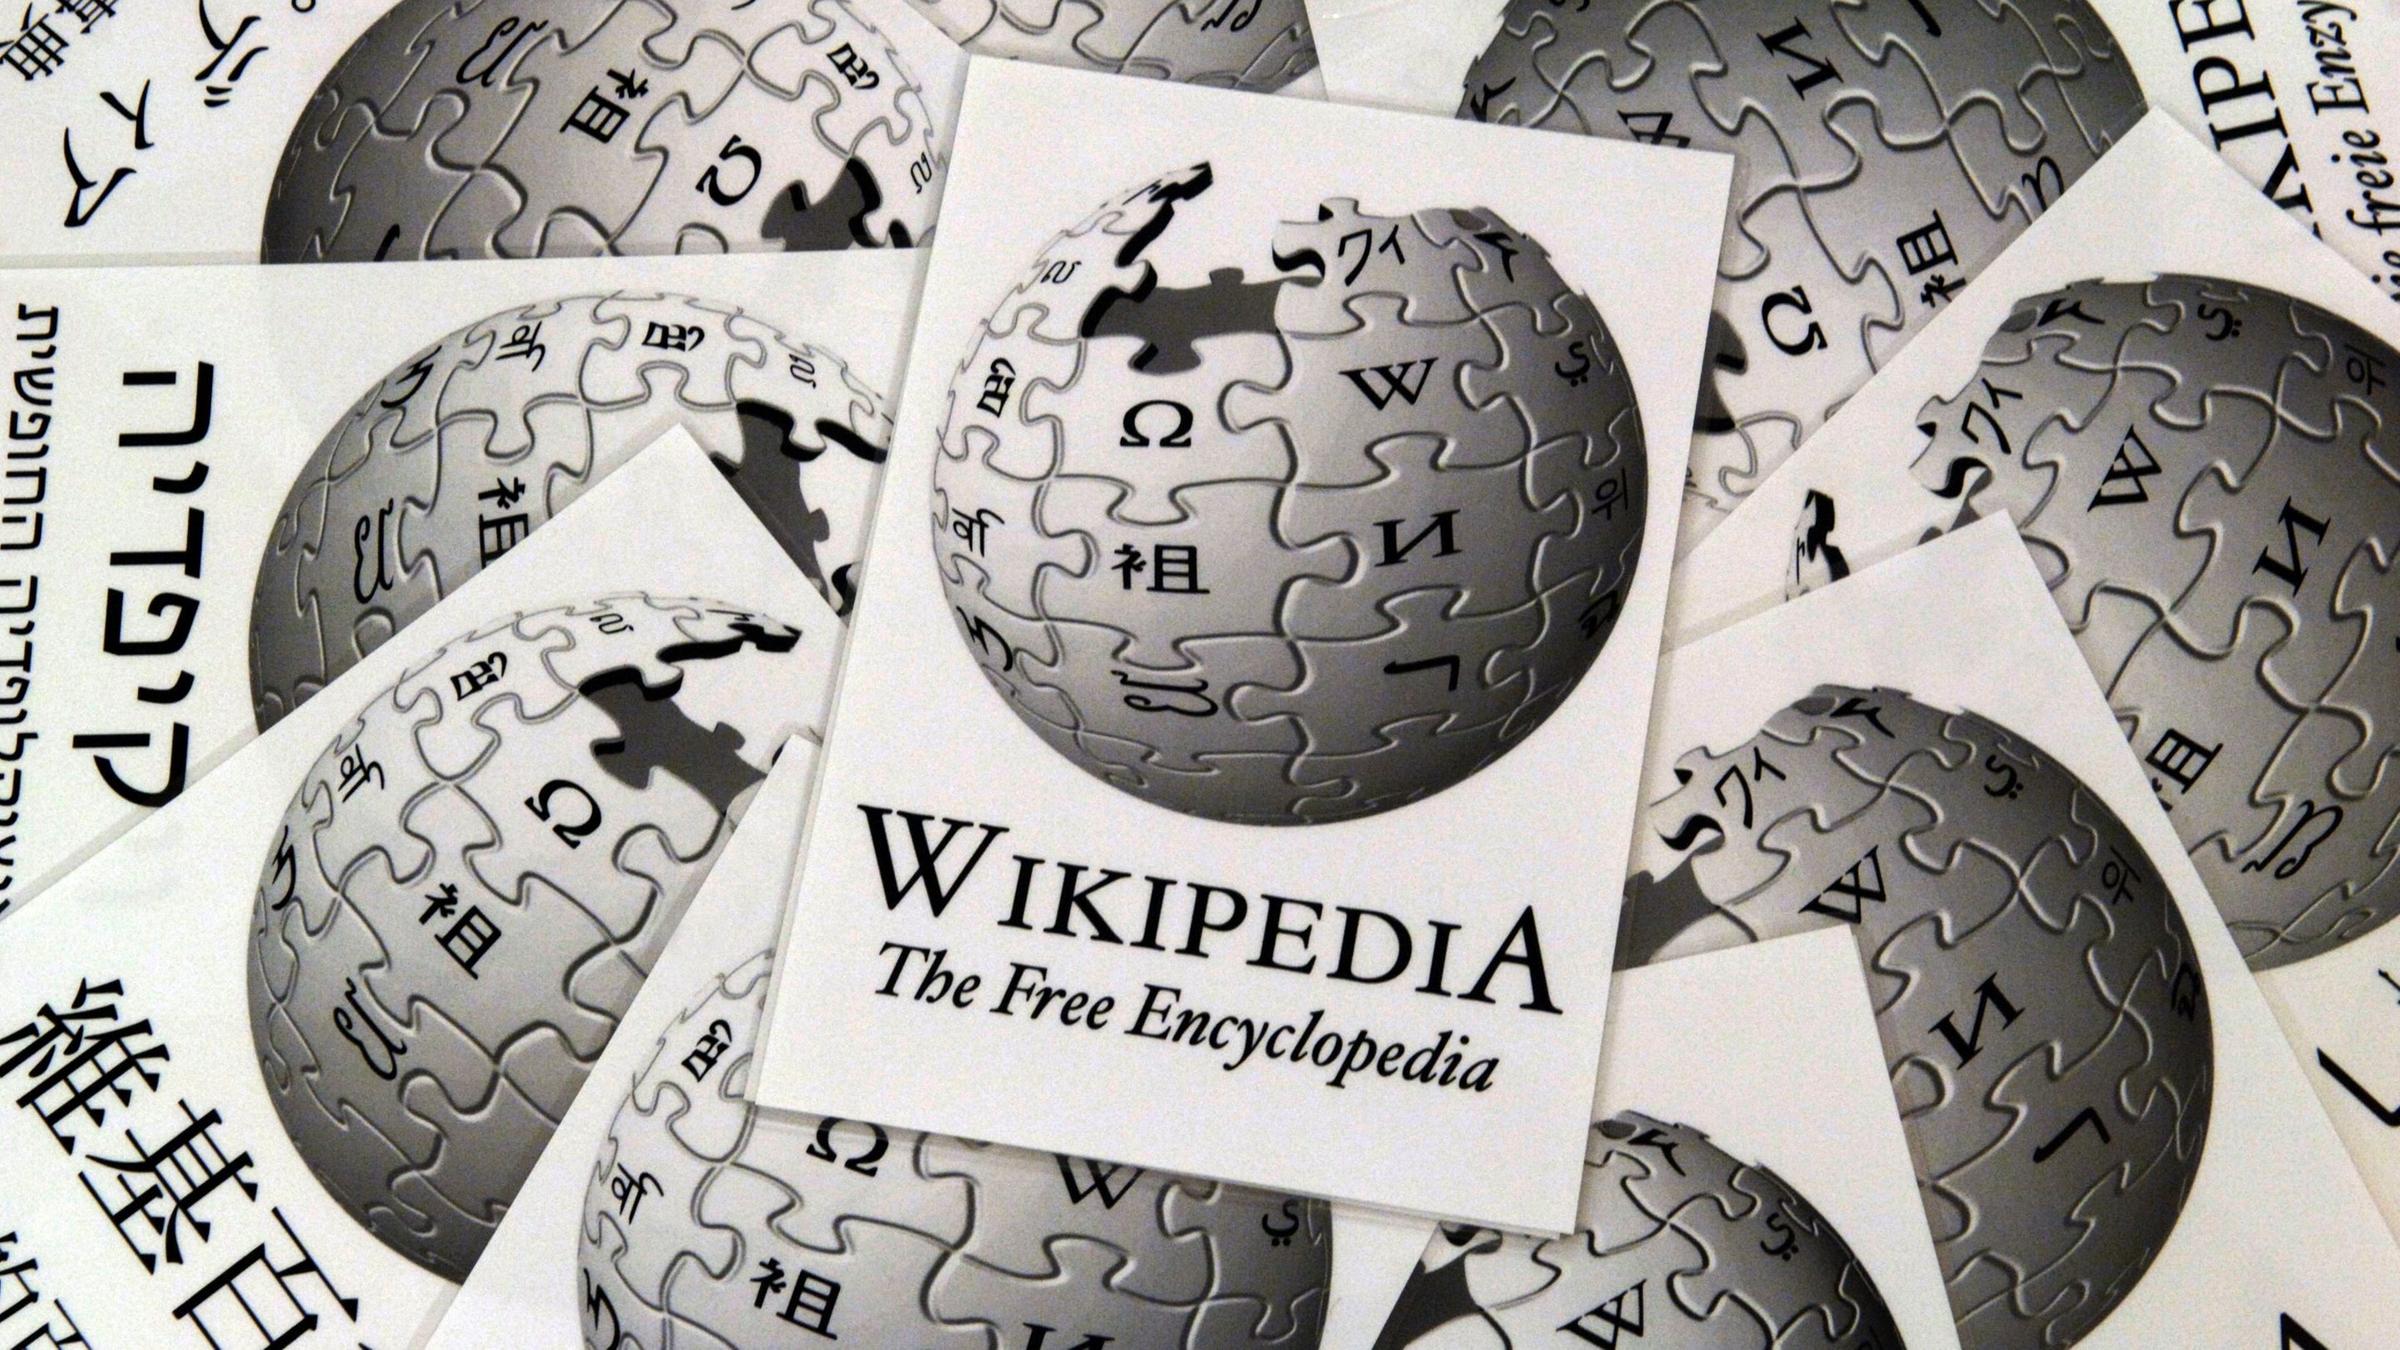 Jahre Online Enzyklopadie Quelle Wikipedia Geht Das Zdfheute